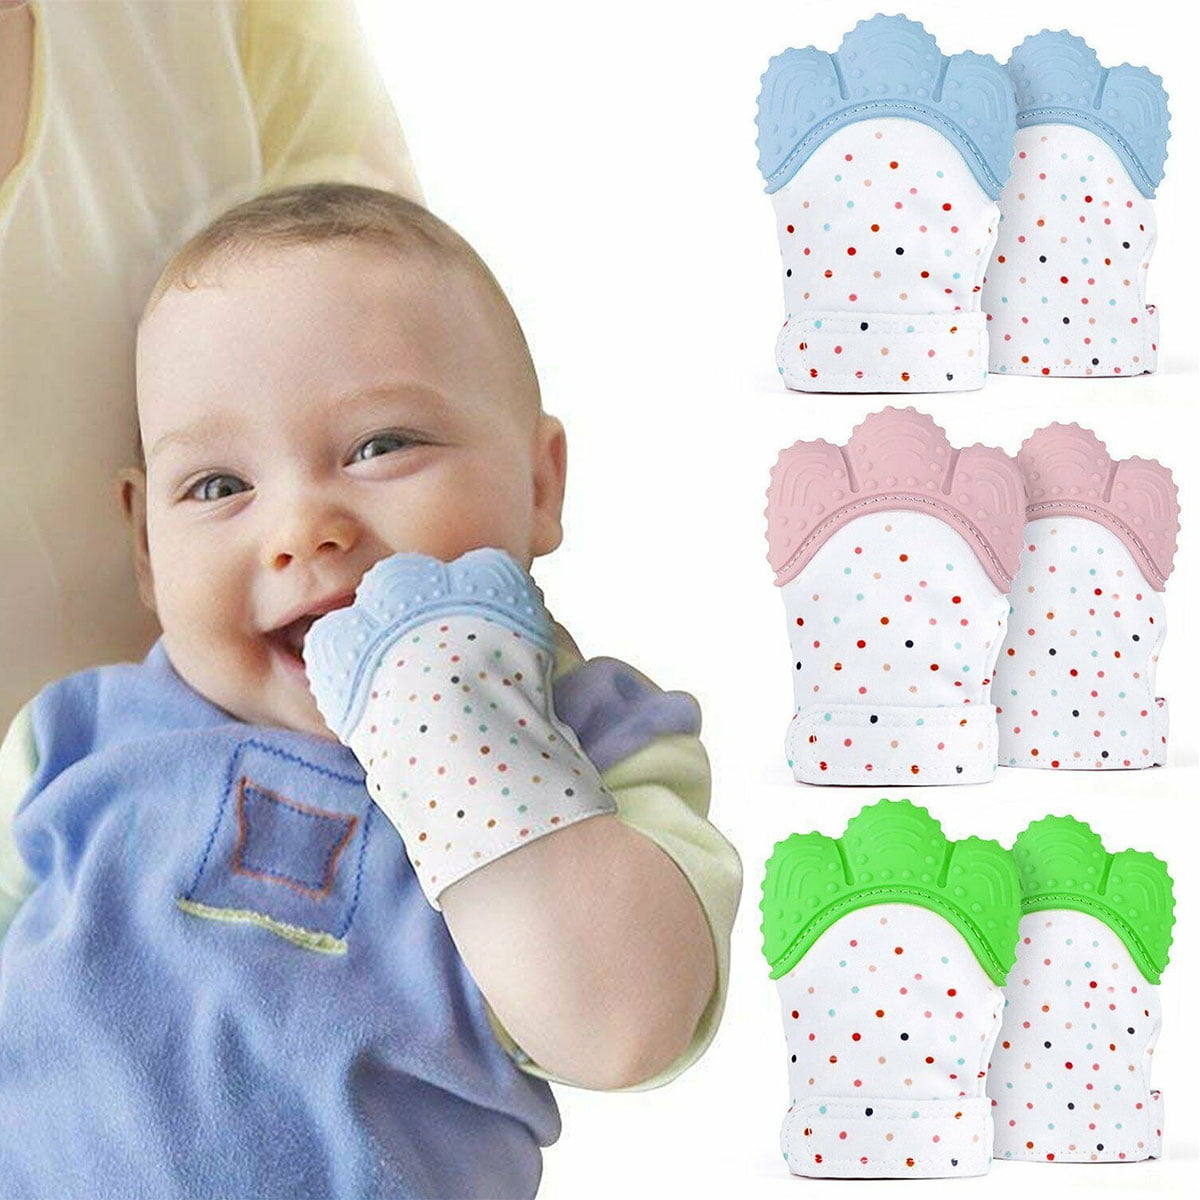 Silicone Baby Teething Mitt Teether Mitten Glove Safe BPA Chew Dummy Toy 